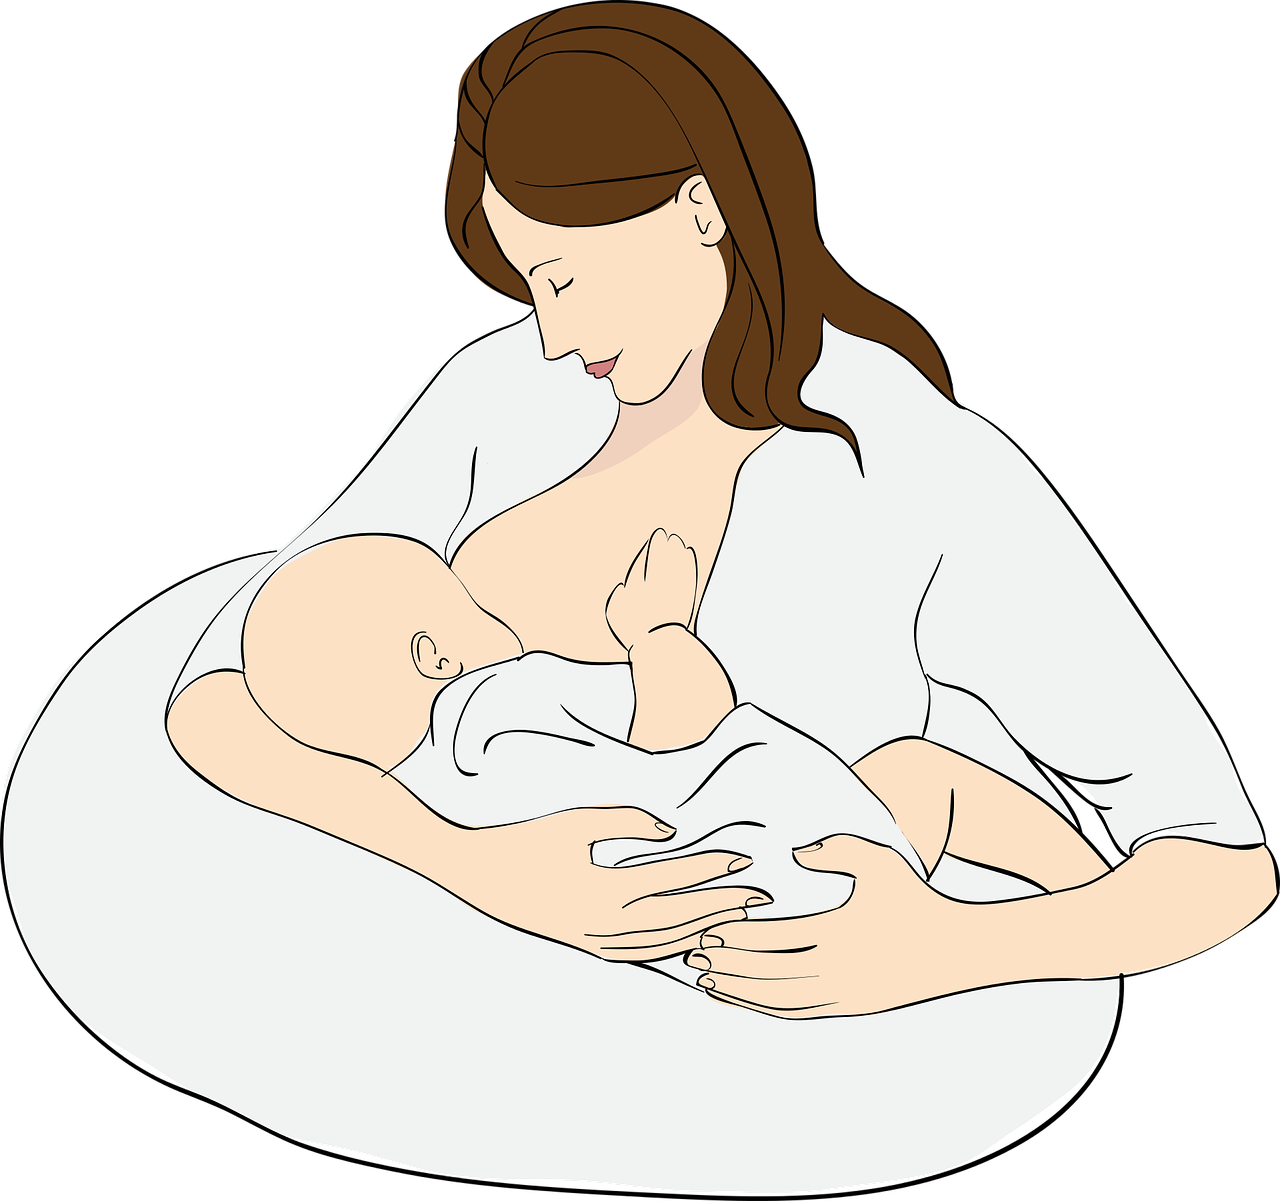 法国国立助产士学院围产期干预指南：启动和支持母乳喂养